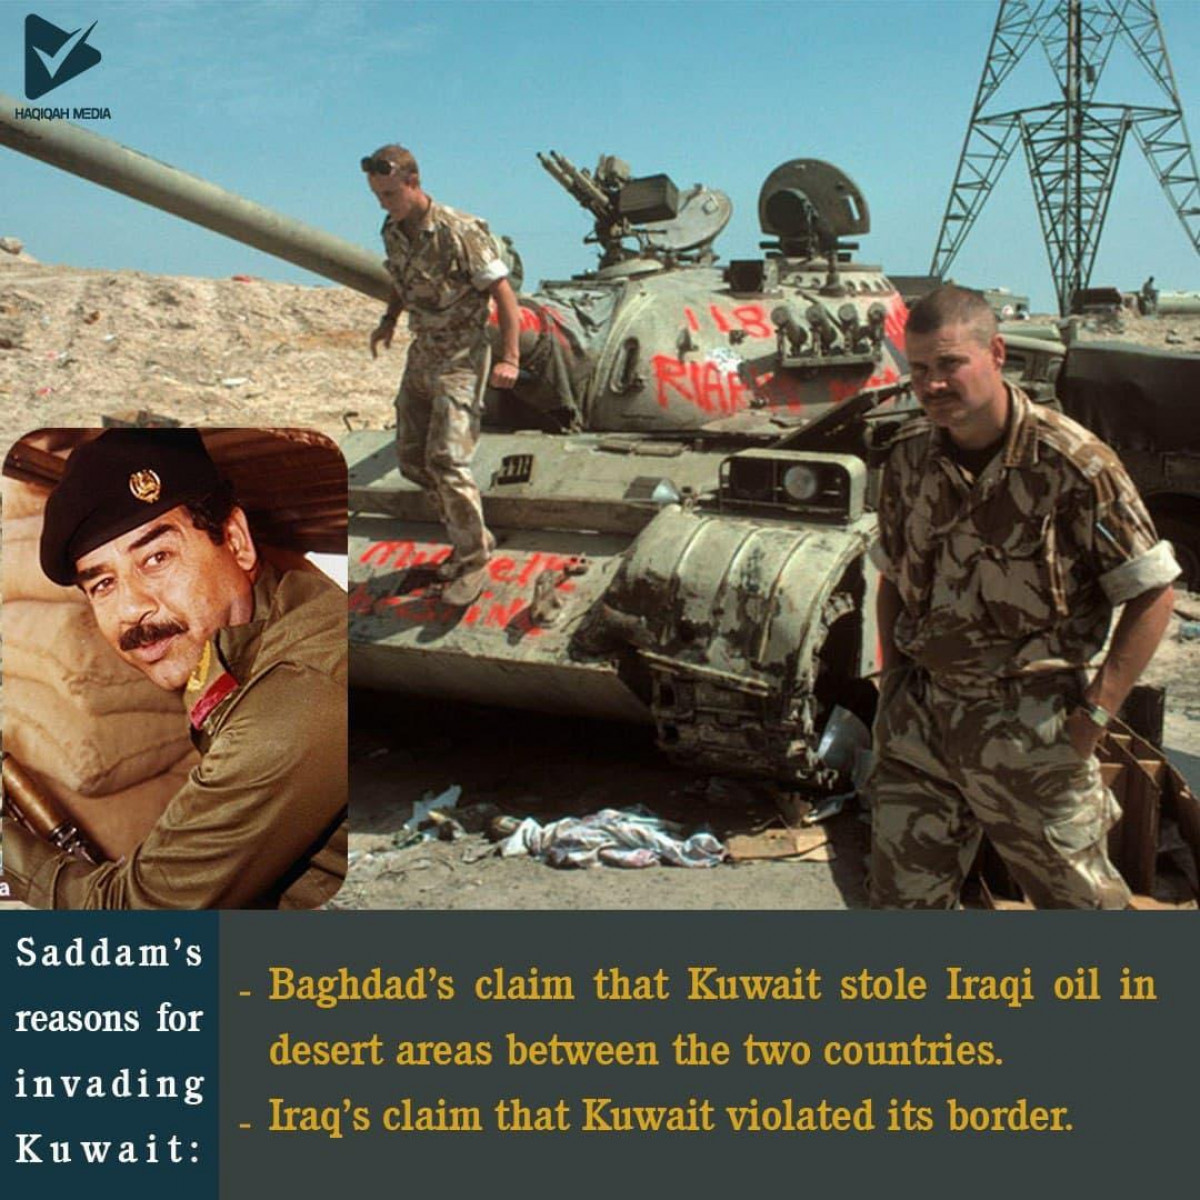 Saddam's reasons for invading Kuwait